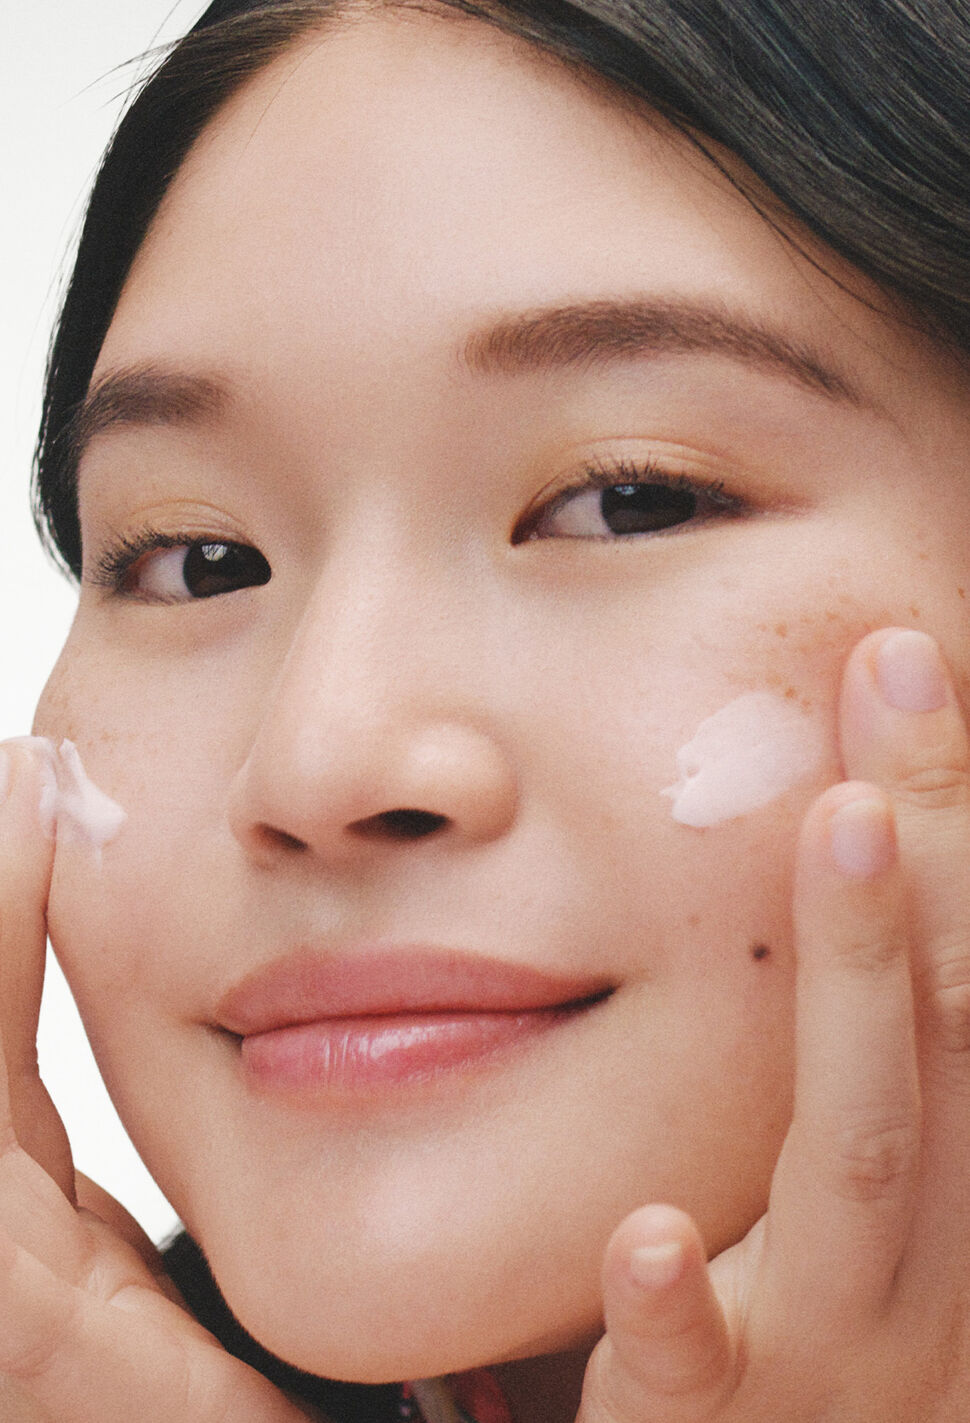 Emulsion: Mastering the Art of Applying It on Your Skin - Truebasics Blog